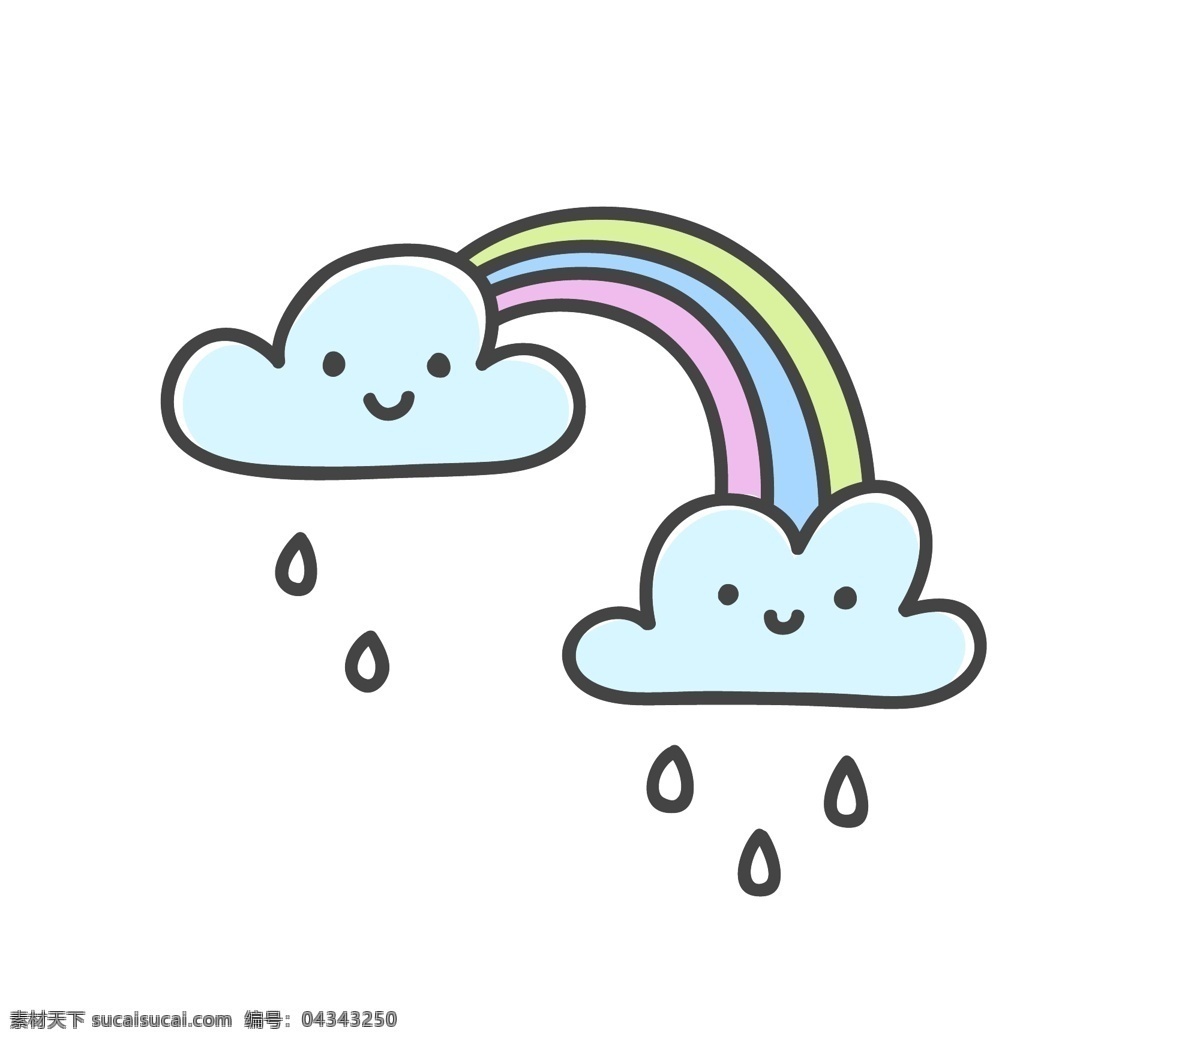 手绘 卡通 彩虹 雨 矢量 白云 彩色 平面素材 设计素材 矢量素材 下雨 雨滴